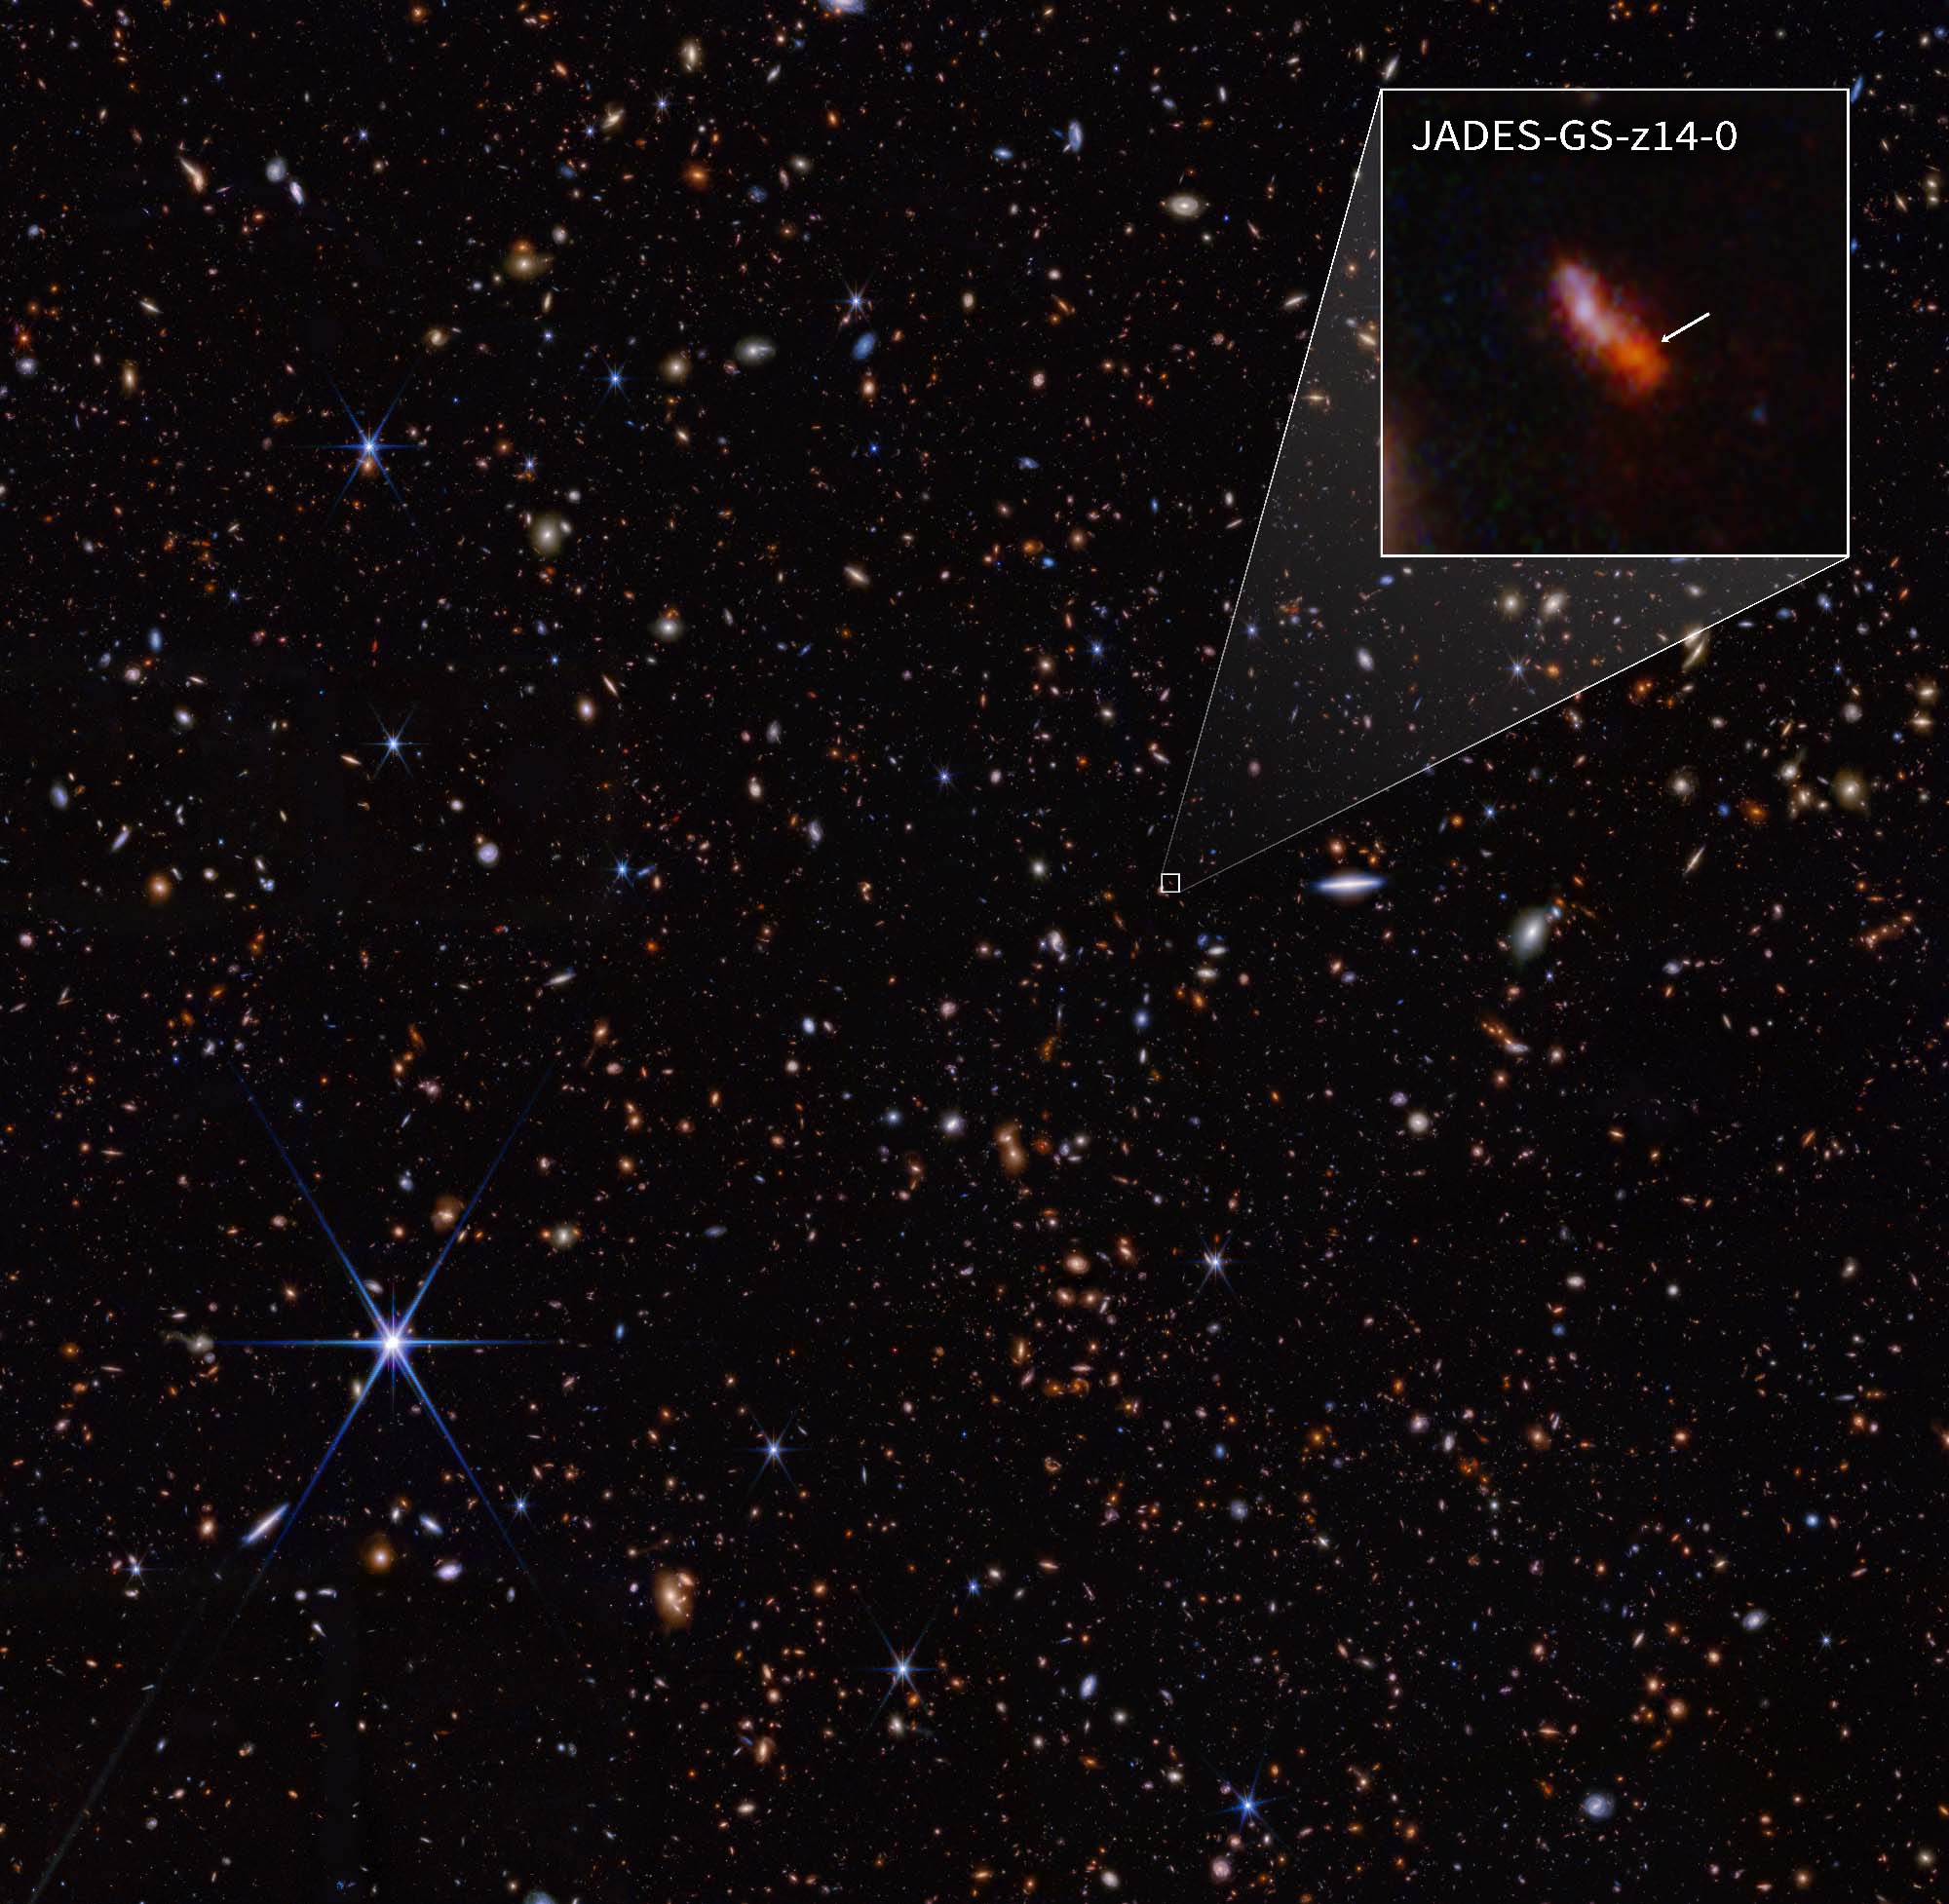 JADES (Imagen NIRCam con despliegue). Los datos de NIRCam se utilizaron para determinar qué galaxias estudiar más a fondo con observaciones espectroscópicas. Se determinó que una de esas galaxias, JADES-GS-z14-0 (que se muestra en el despliegue), estaba a un corrimiento al rojo de 14,32 (+0,08/-0,20), lo que la convierte en la actual poseedora del récord de la galaxia más distante conocida. Esto corresponde a un tiempo menos de 300 millones de años después del Big Bang.